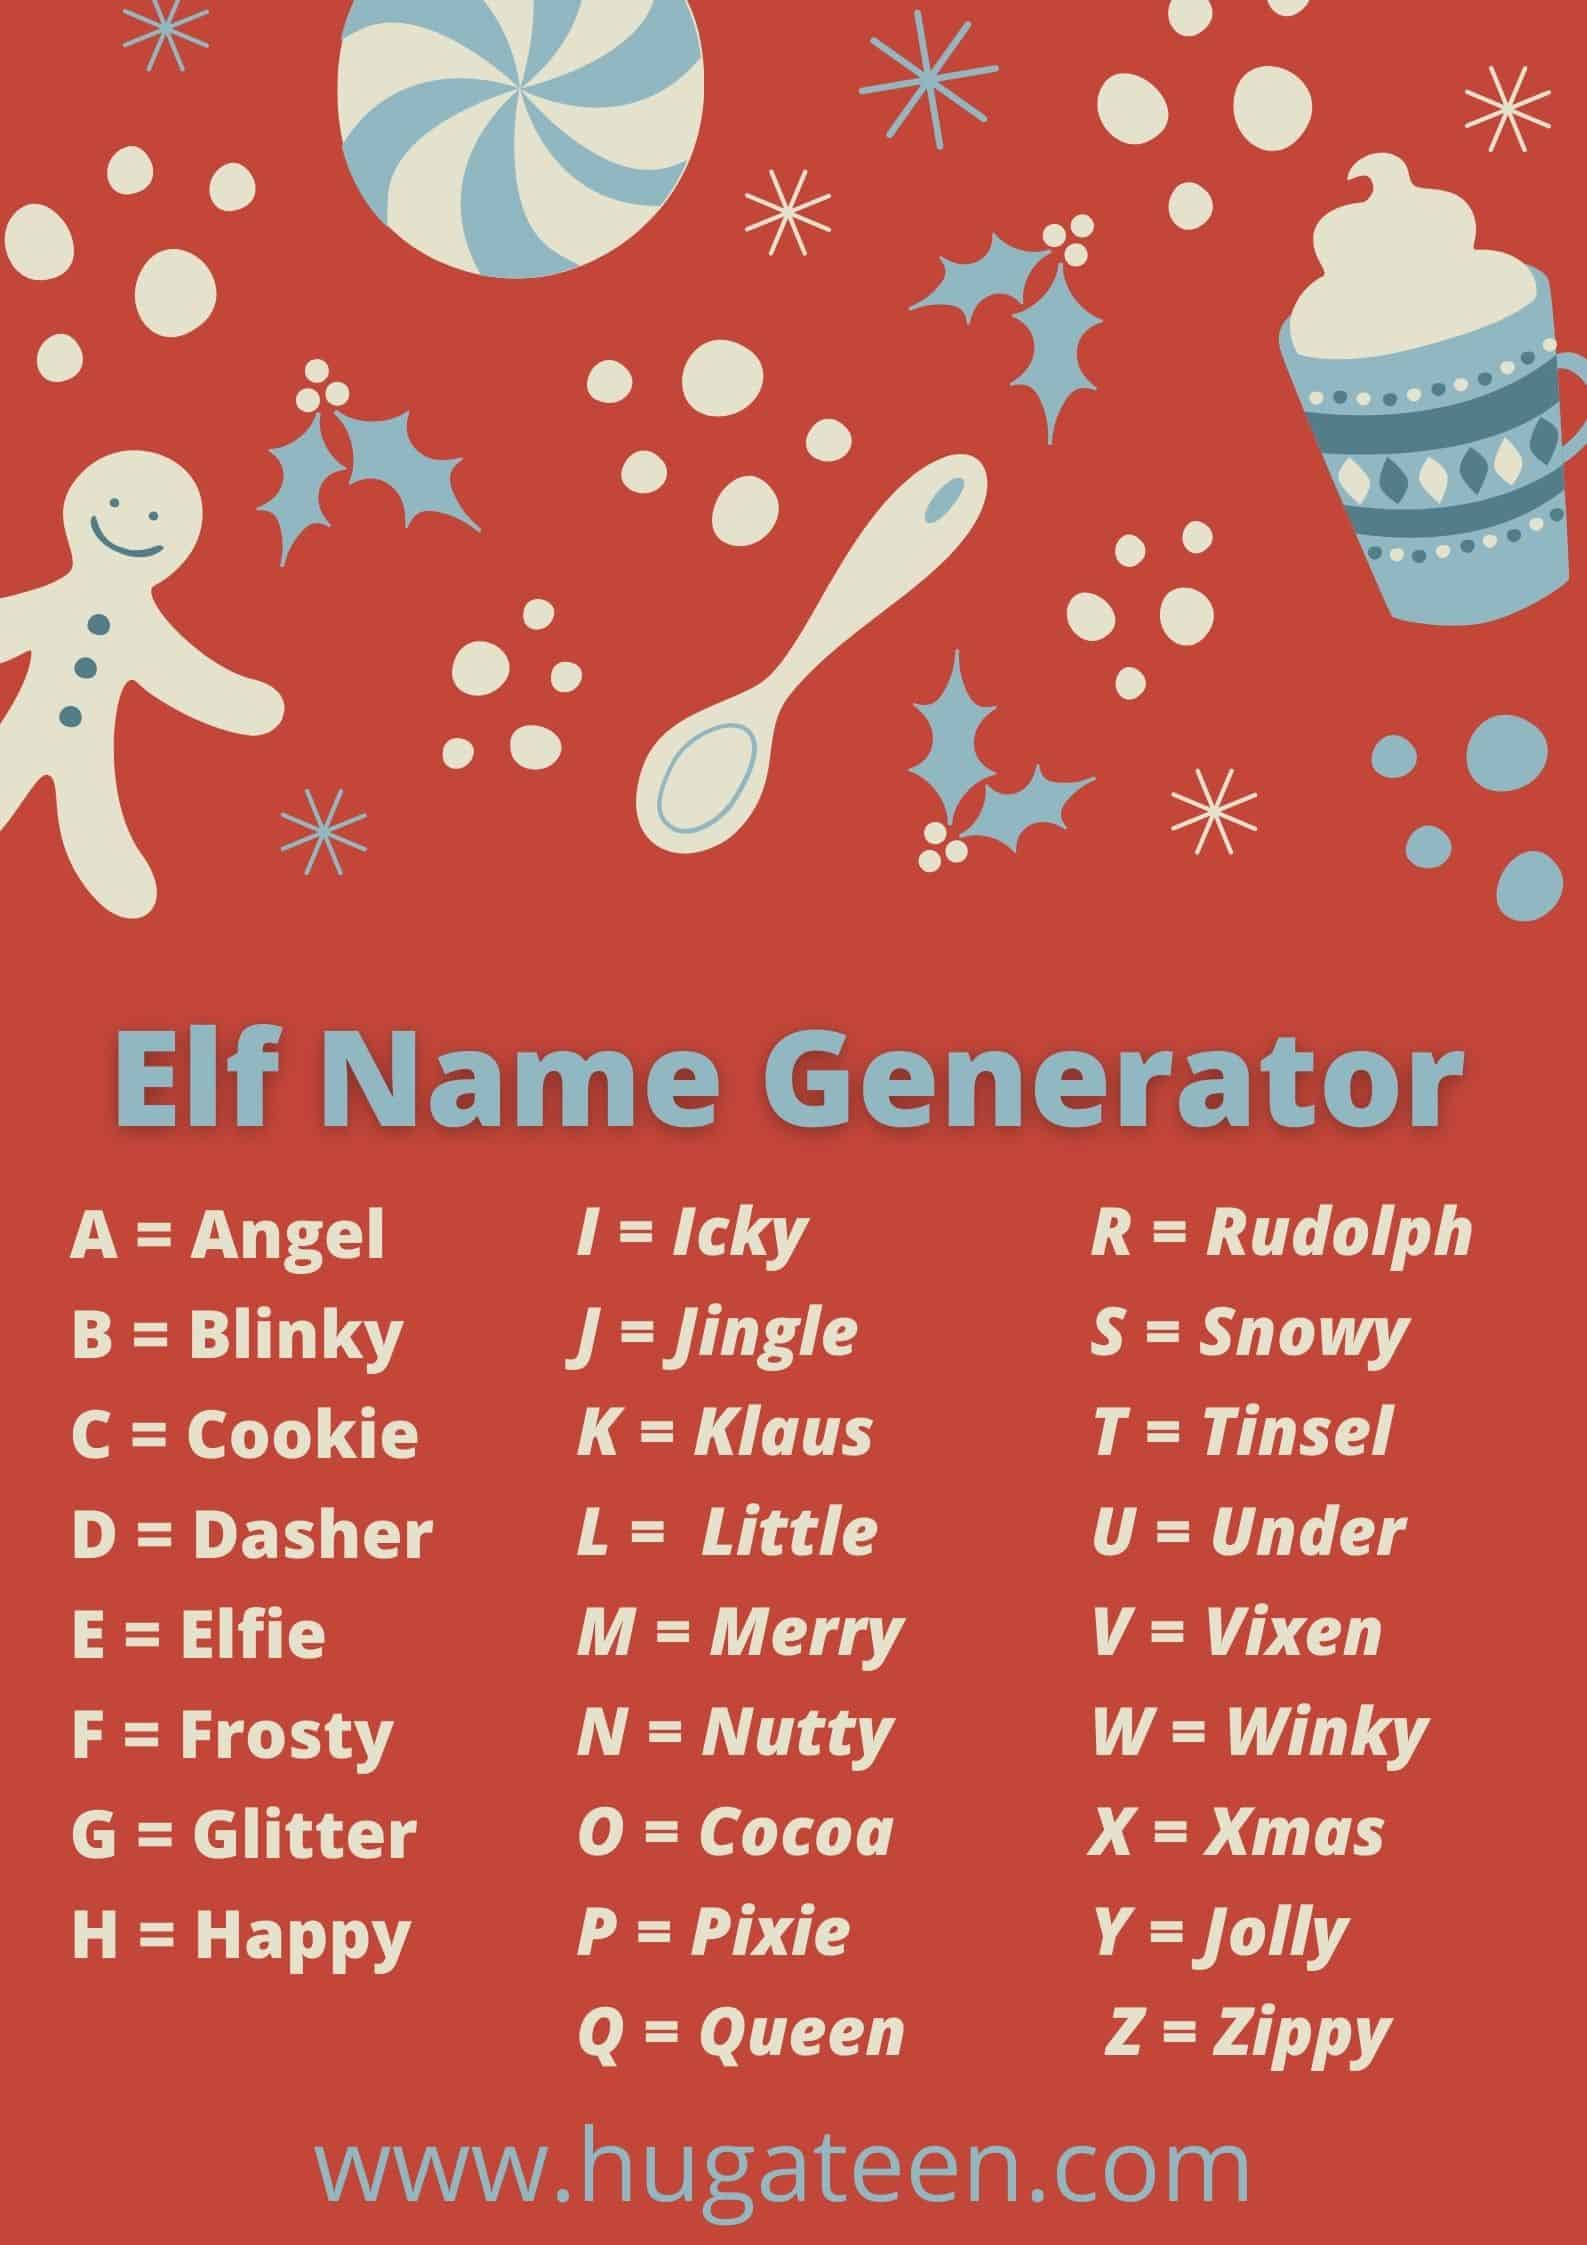 Elf Name Generator_1